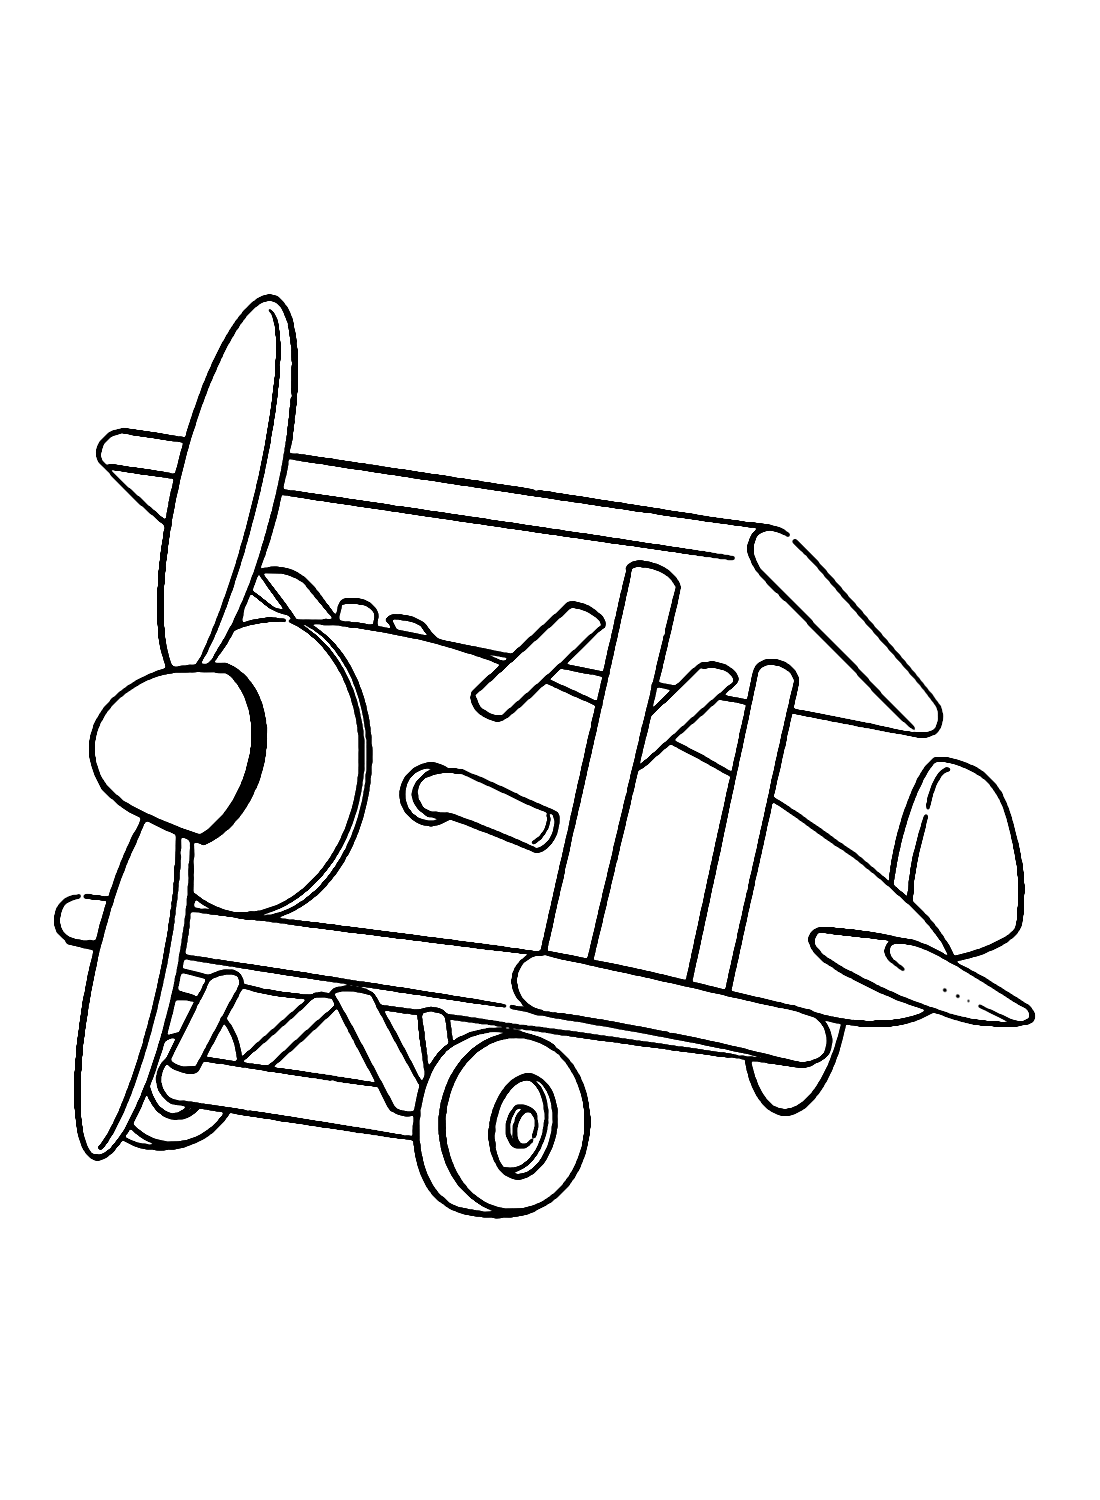 Avião de brinquedo da Toys